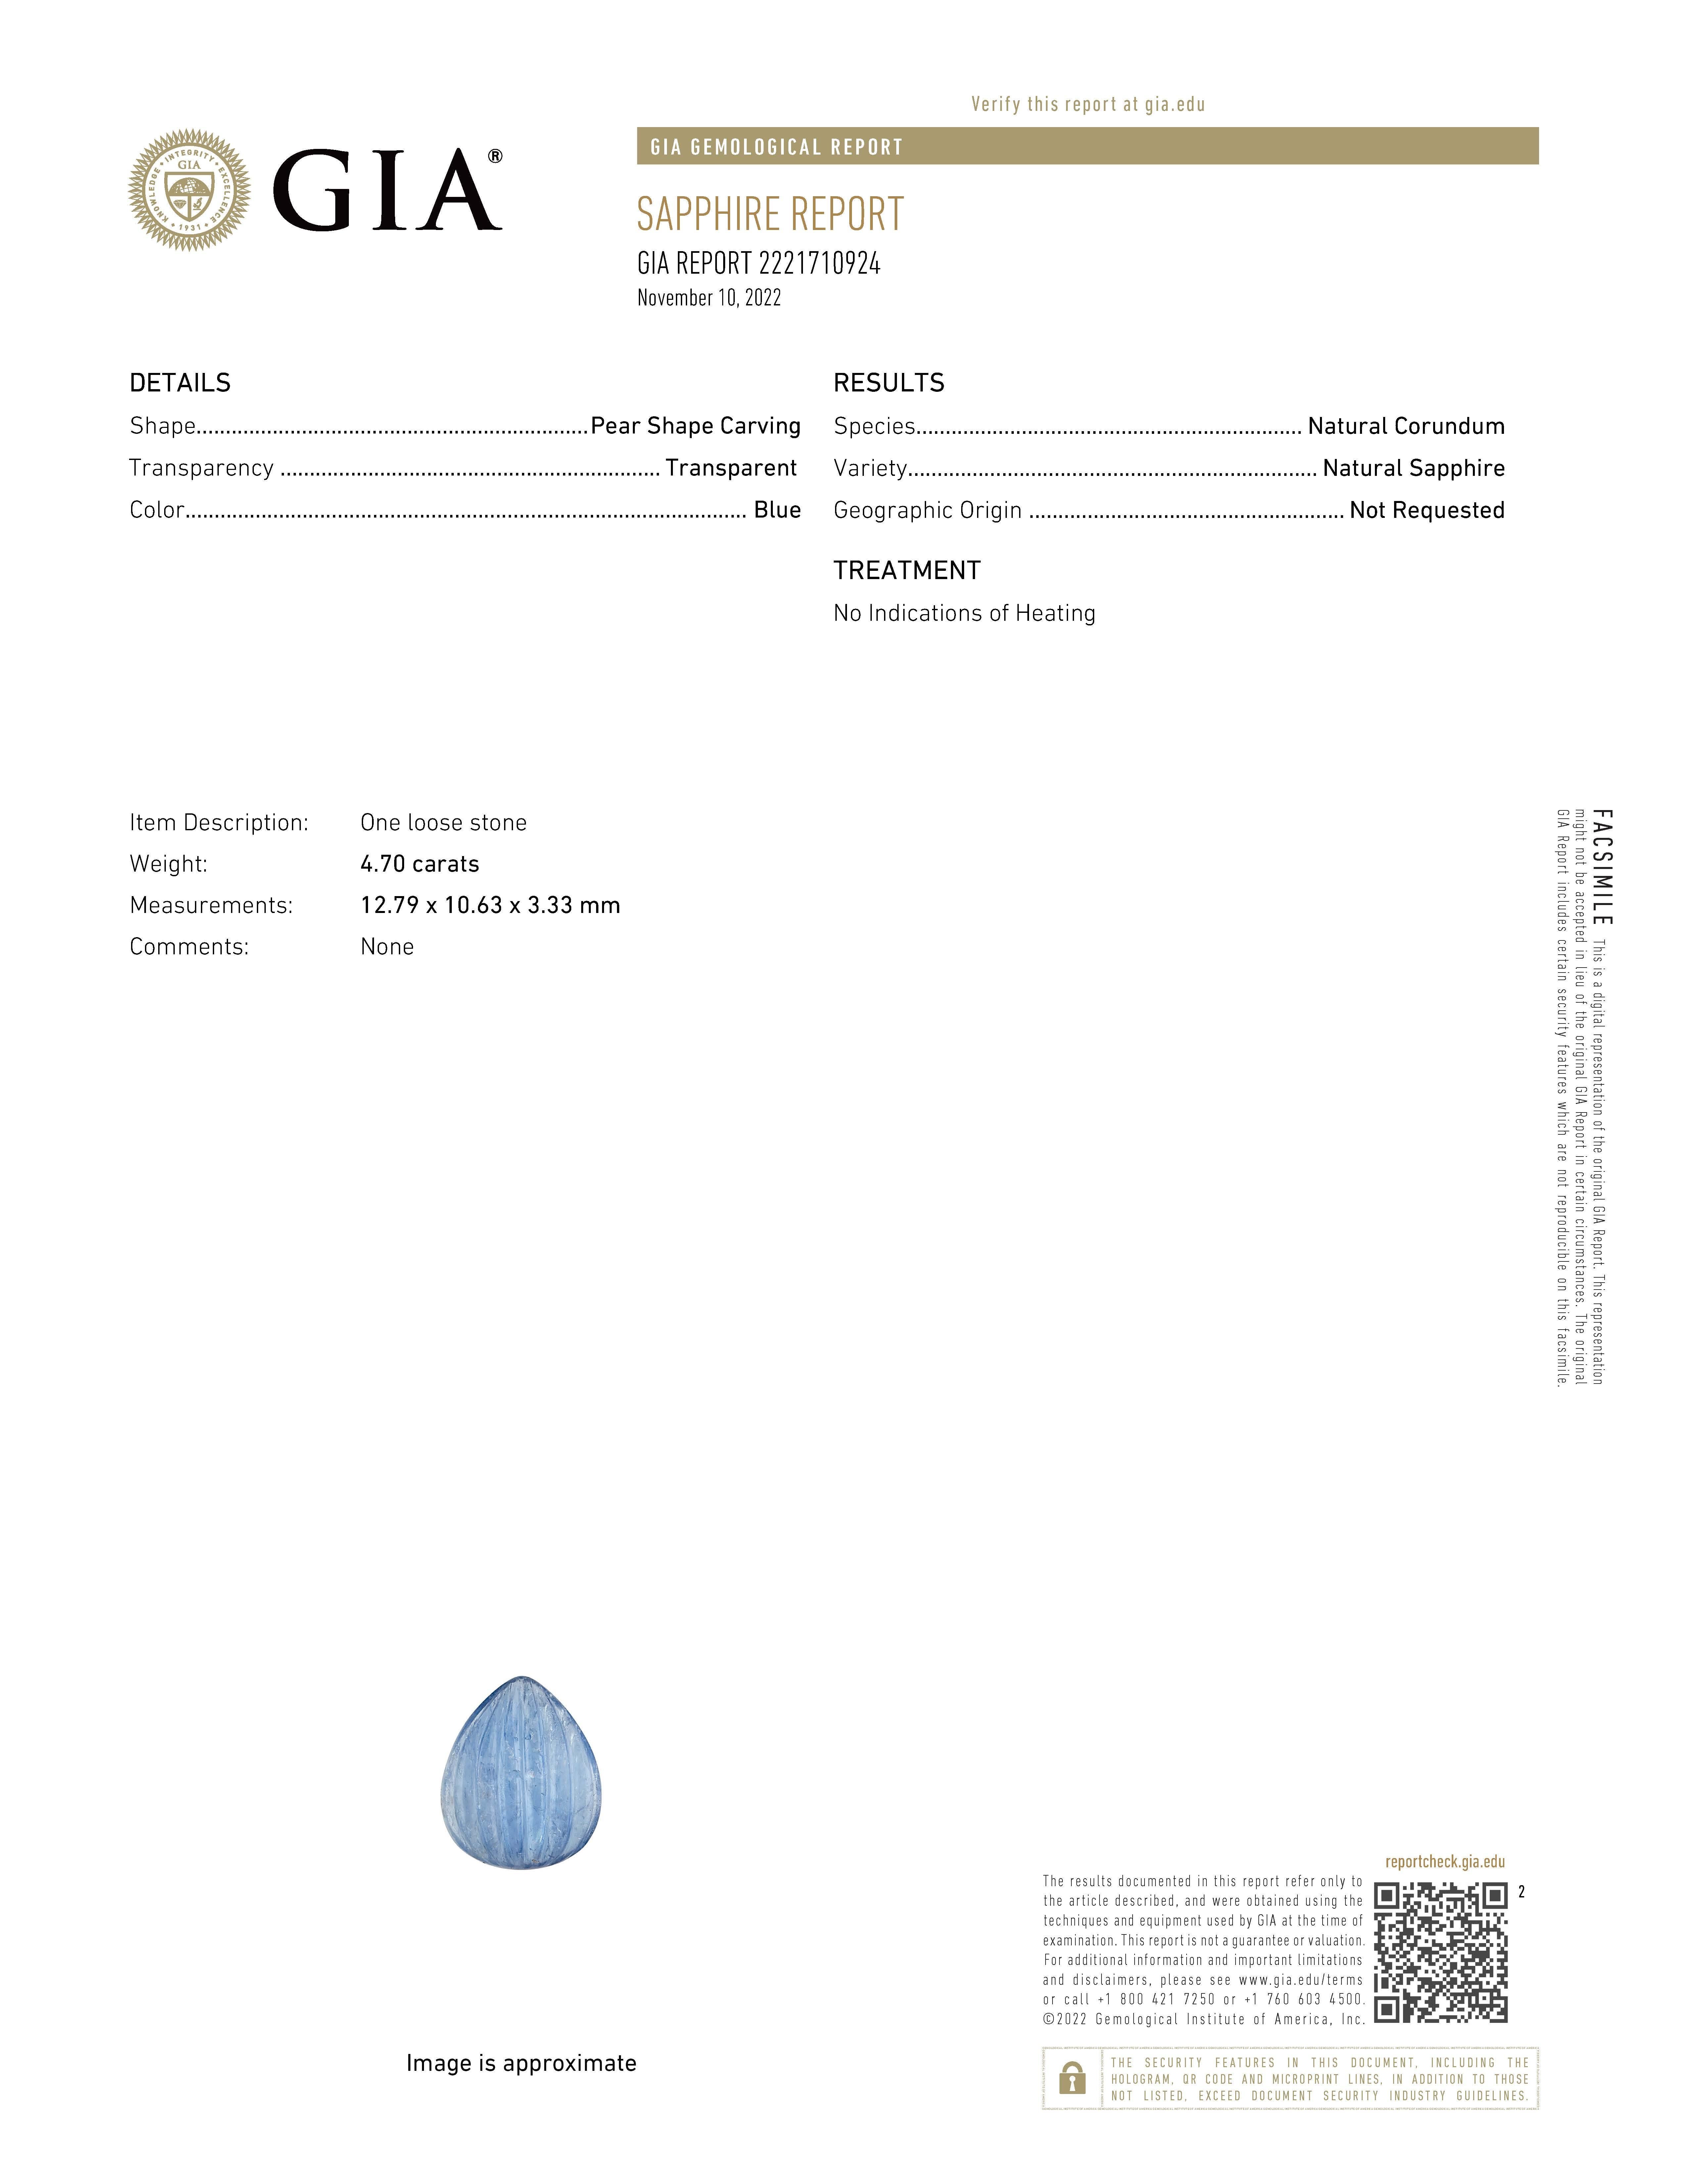 Le saphir naturel sculpté en forme de poire, certifié par la GIA et pesant 4,70 carats, peut être considéré comme une pierre précieuse.
RAPPORT GIA 222171092
Forme Sculpture en forme de poire
Transparence Transparence
Couleur Bleu
Espèces Corindon